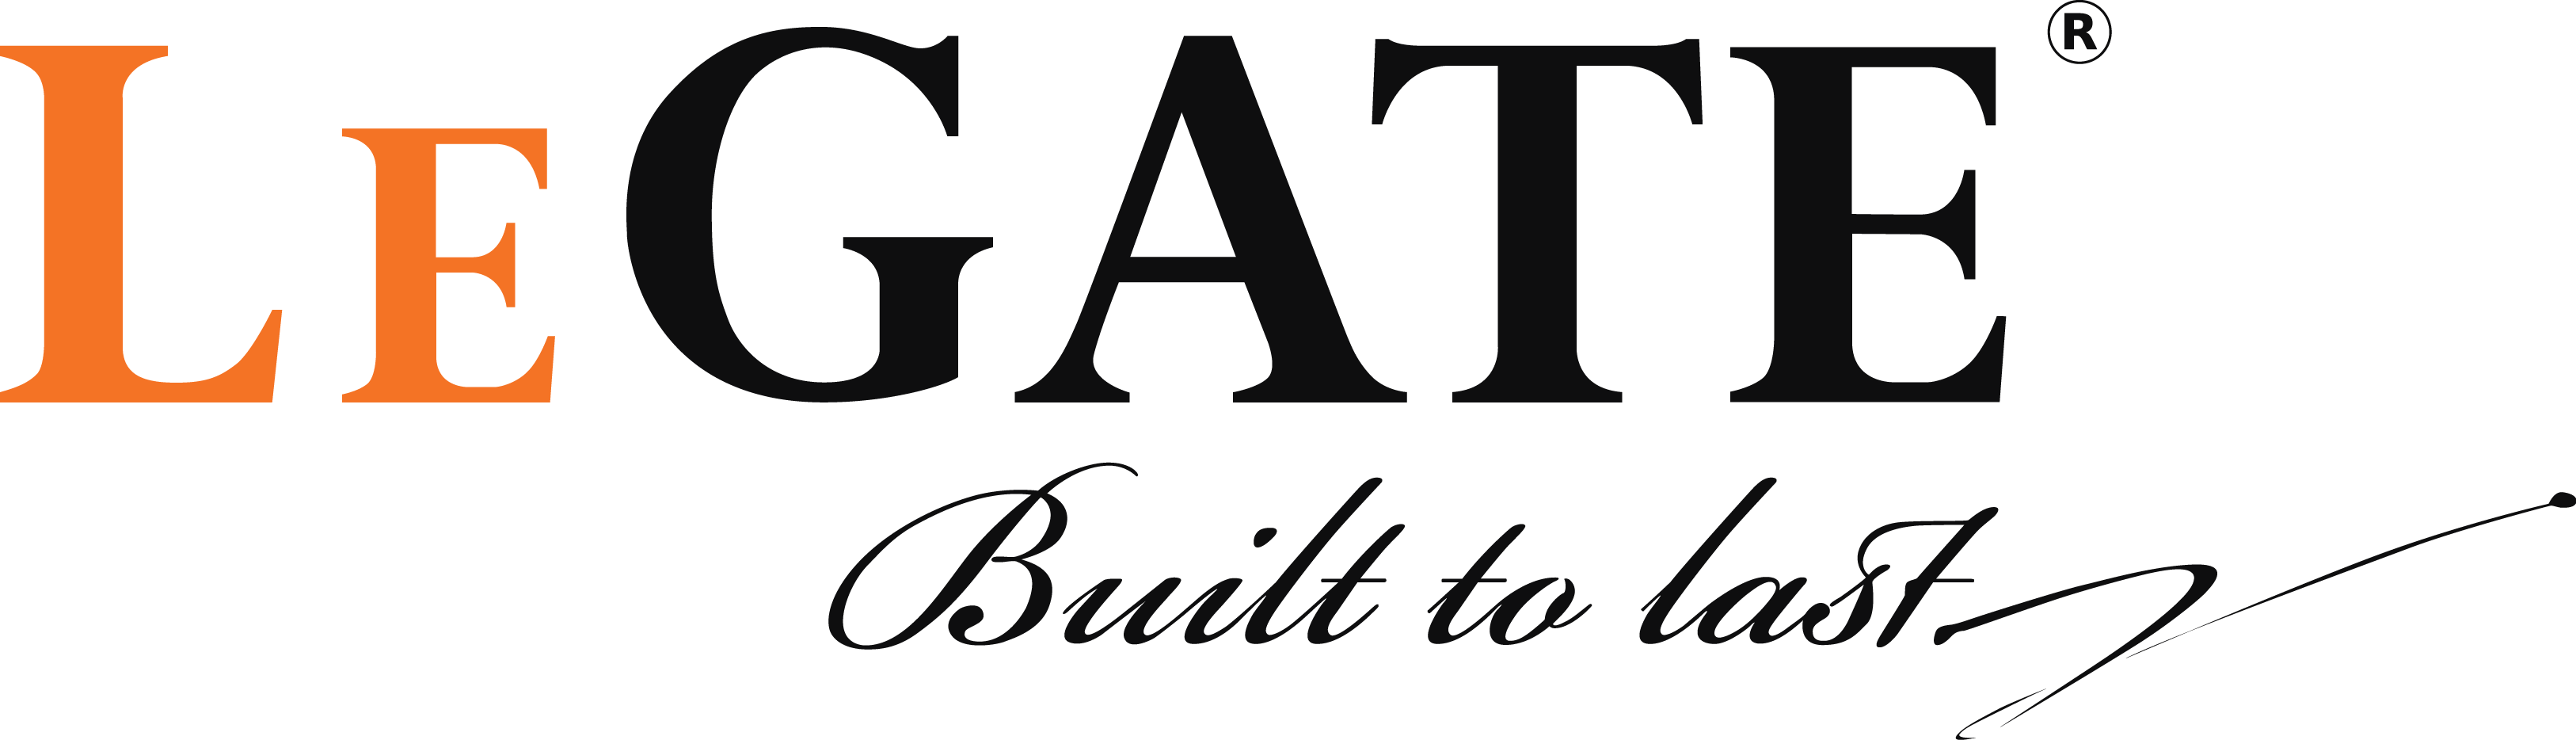 Legate Enterprise Pte. Ltd. logo